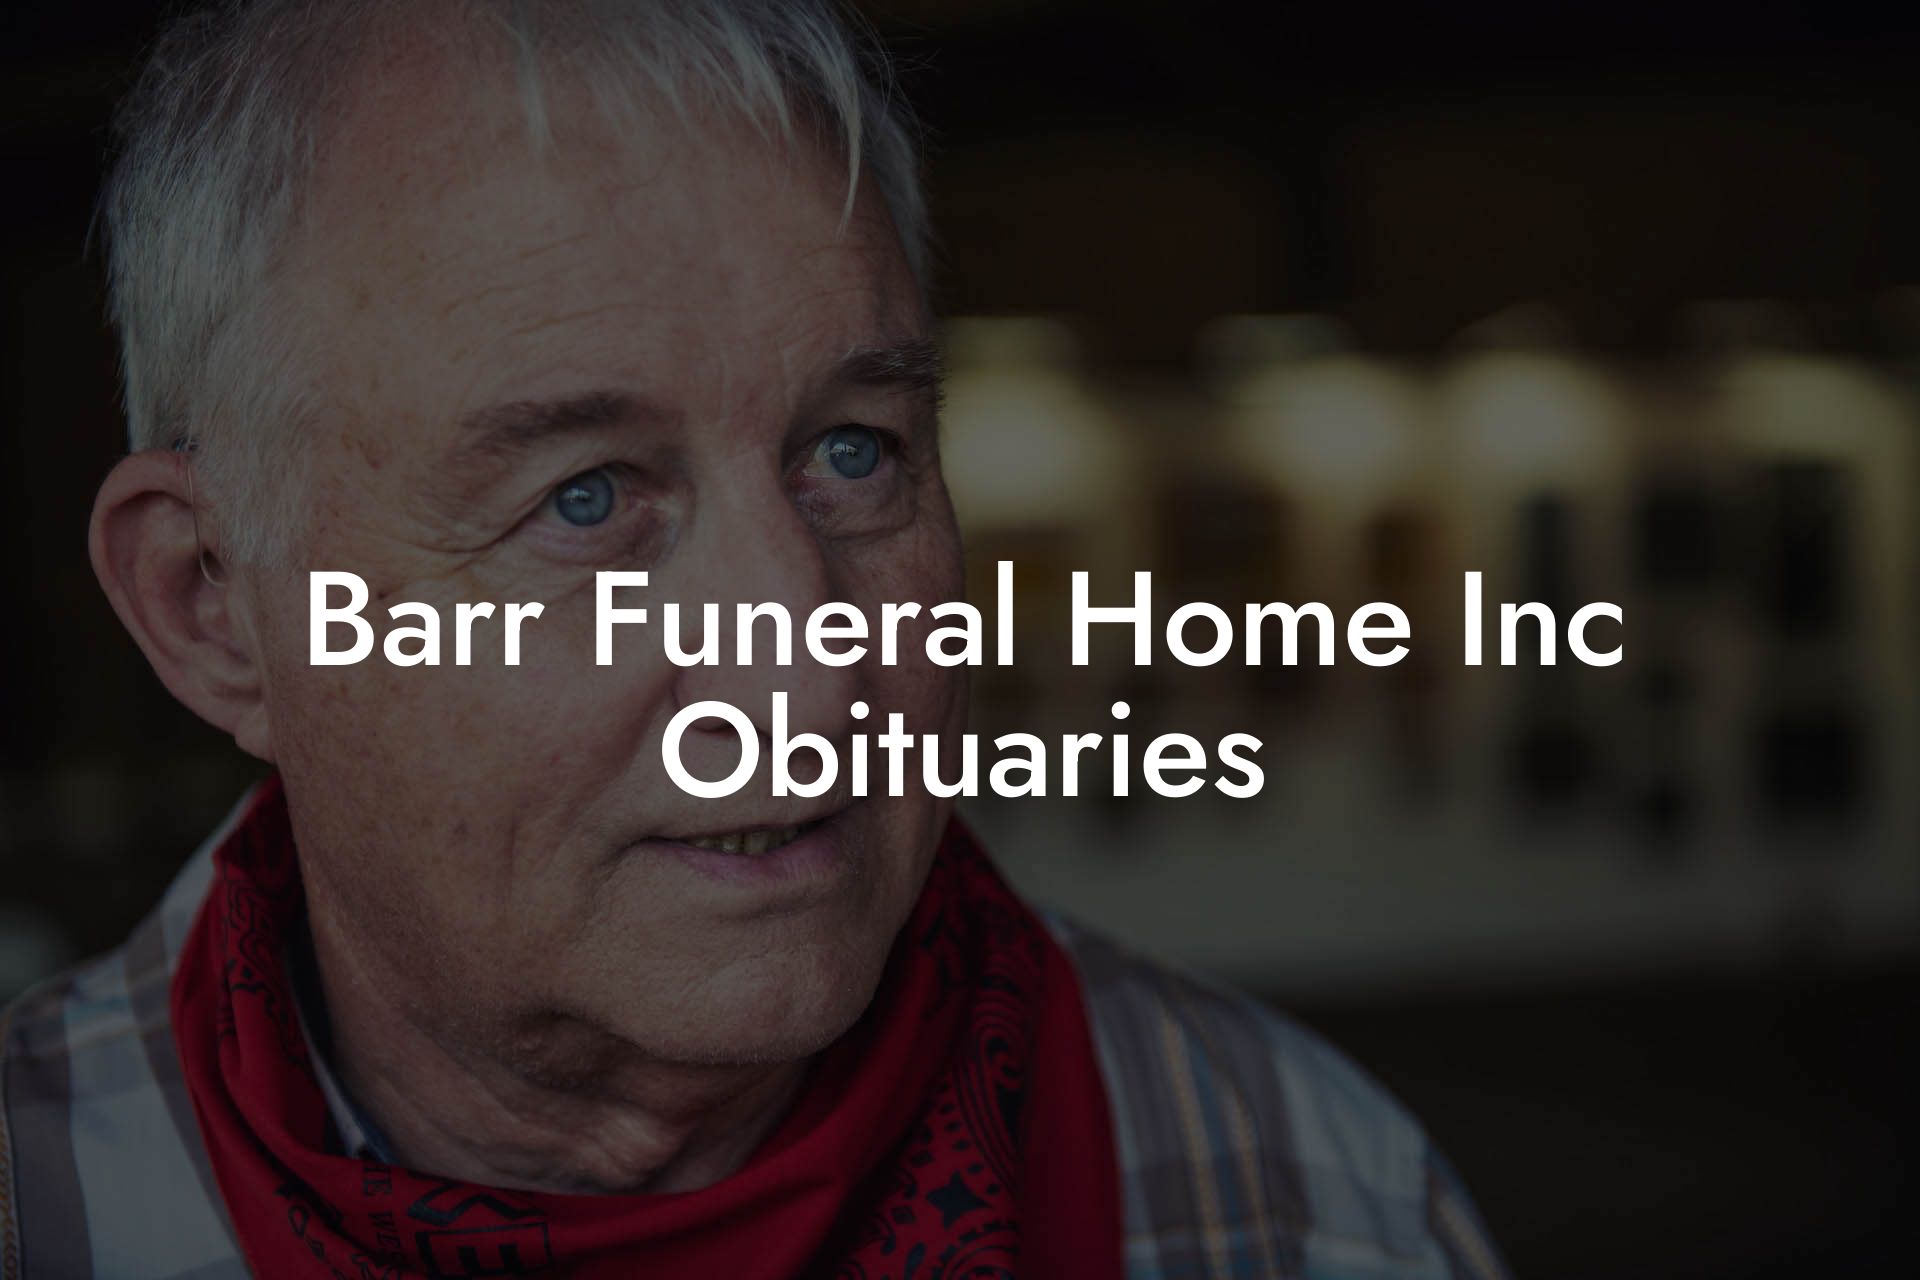 Barr Funeral Home Inc Obituaries